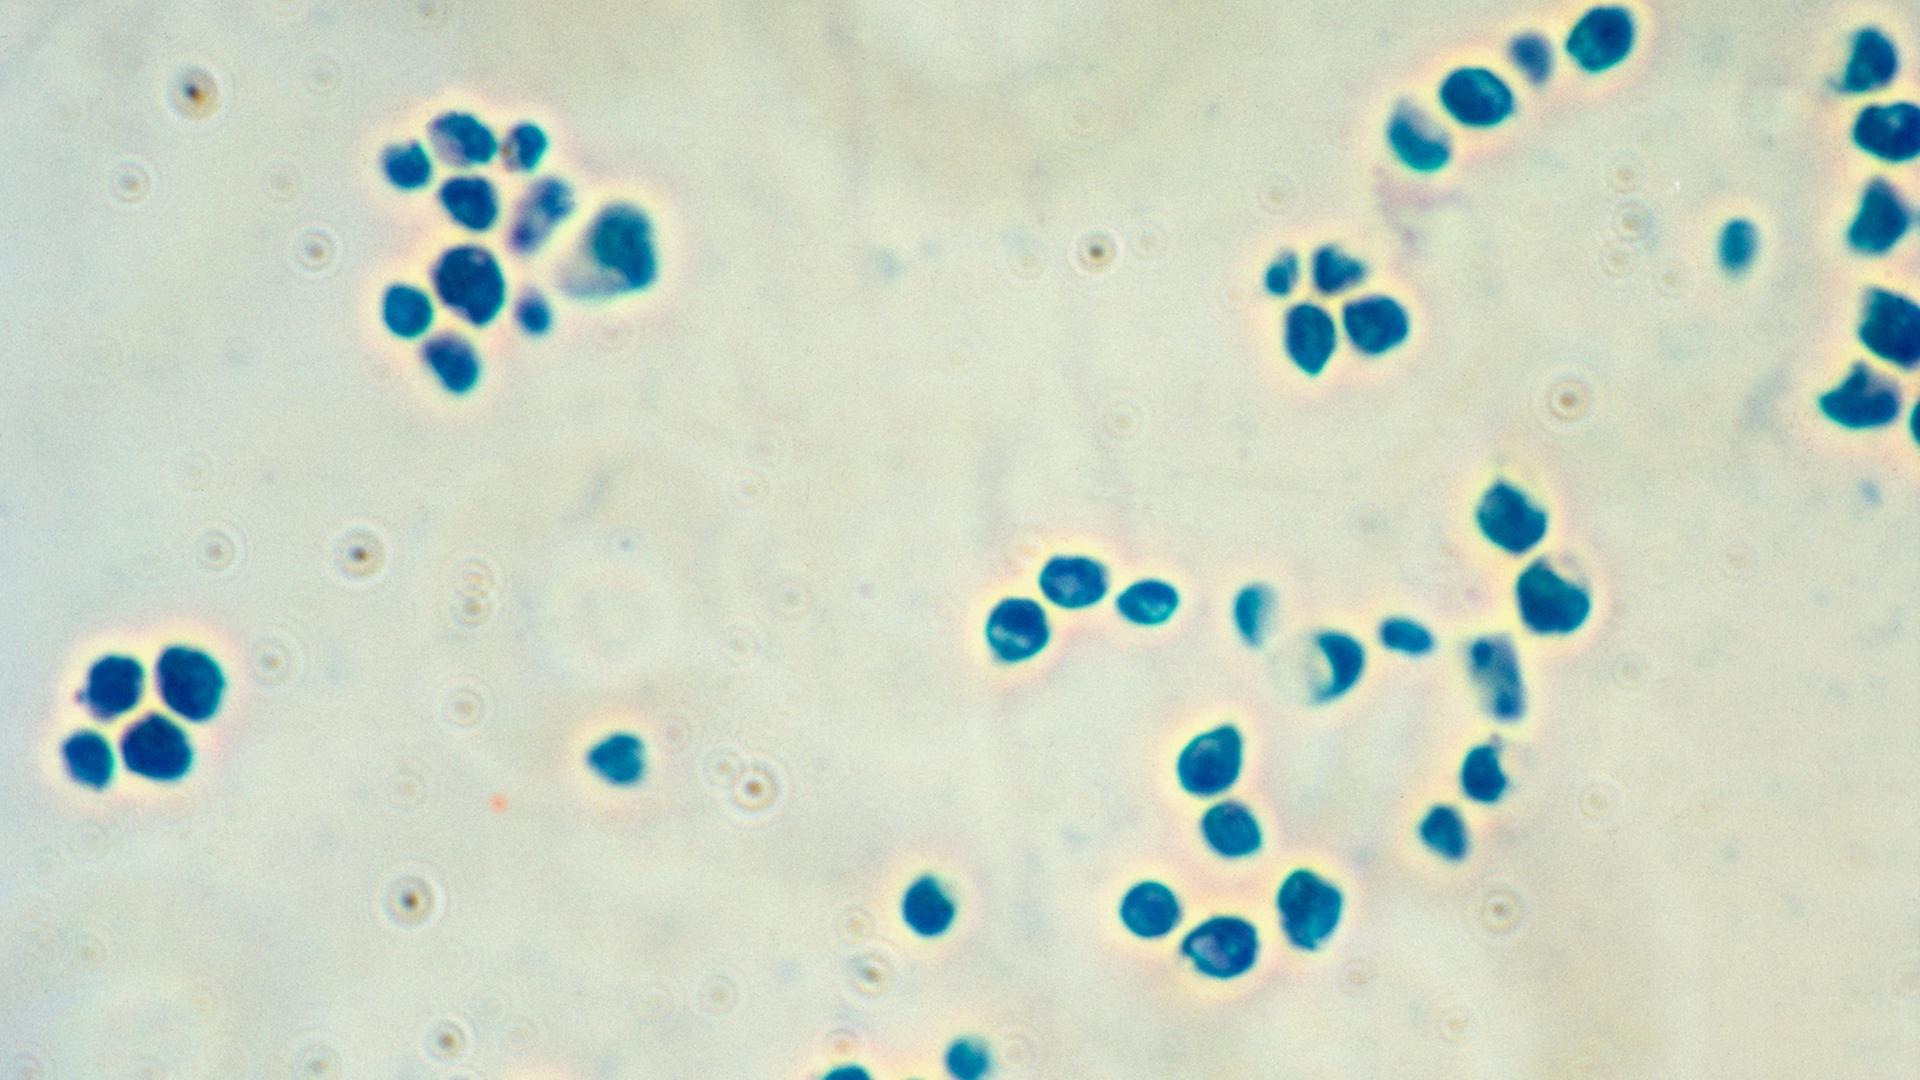 Blaue Pünktchen auf weißem Hintergrund, mikroskopische Aufnahme von Bakterien